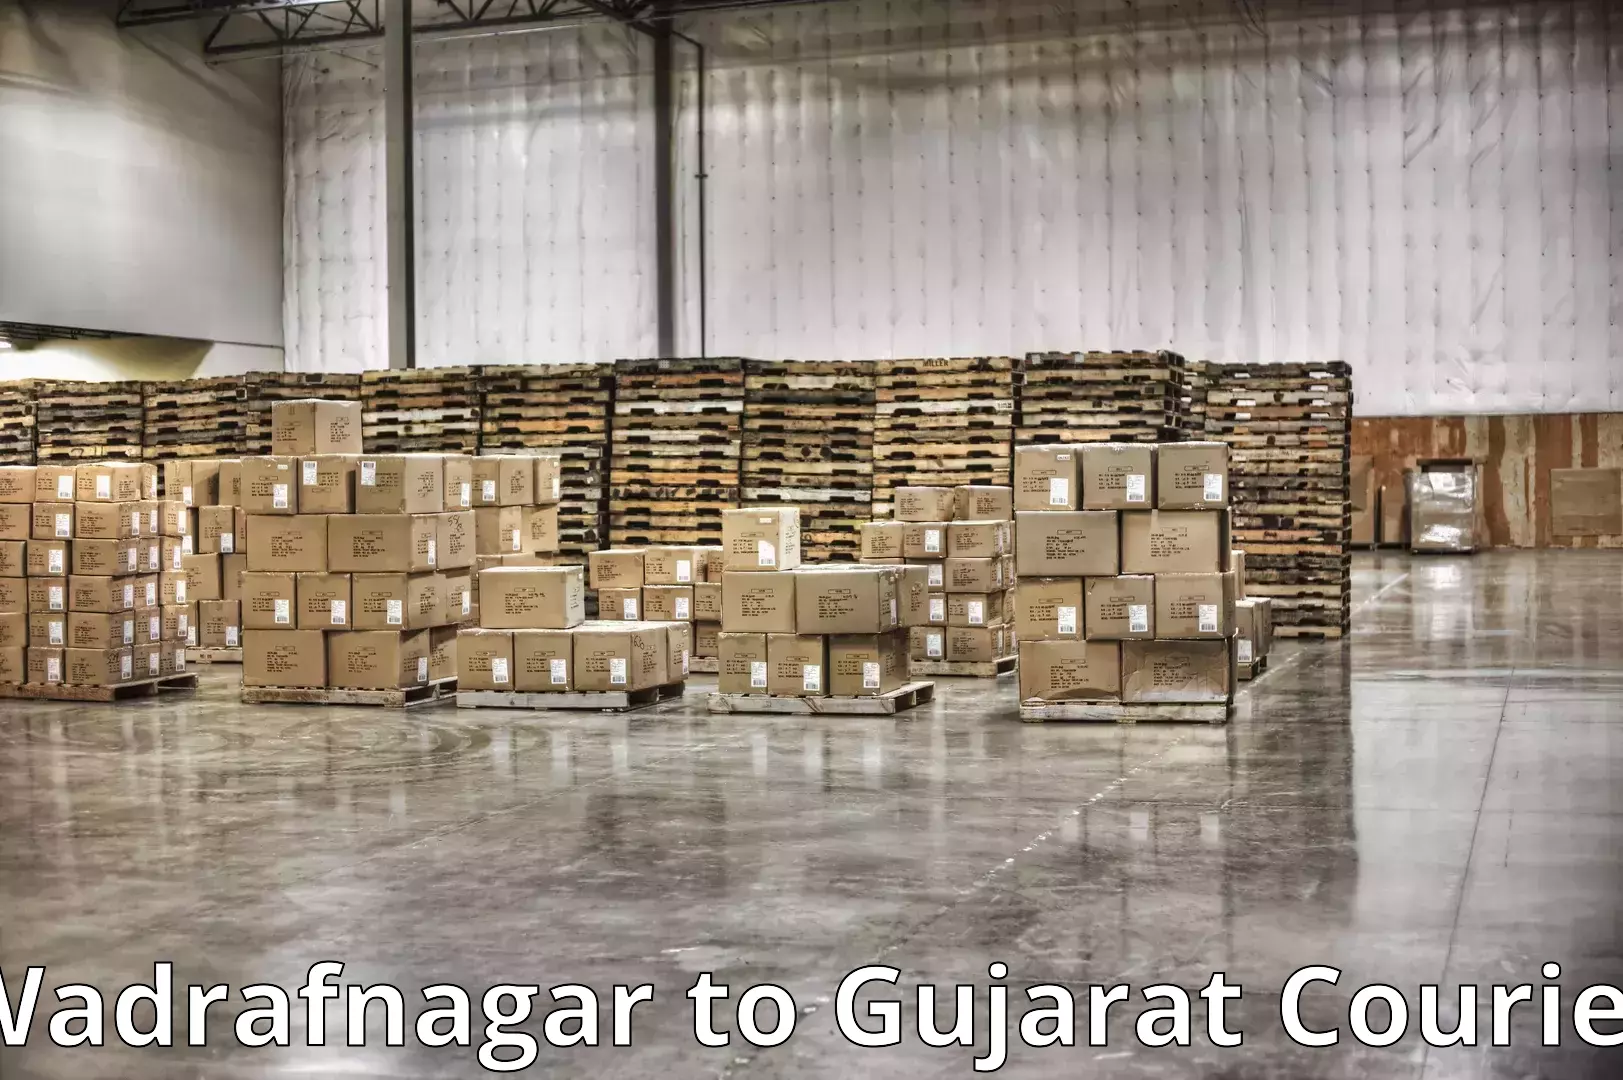 Quality moving company Wadrafnagar to IIT Gandhi Nagar